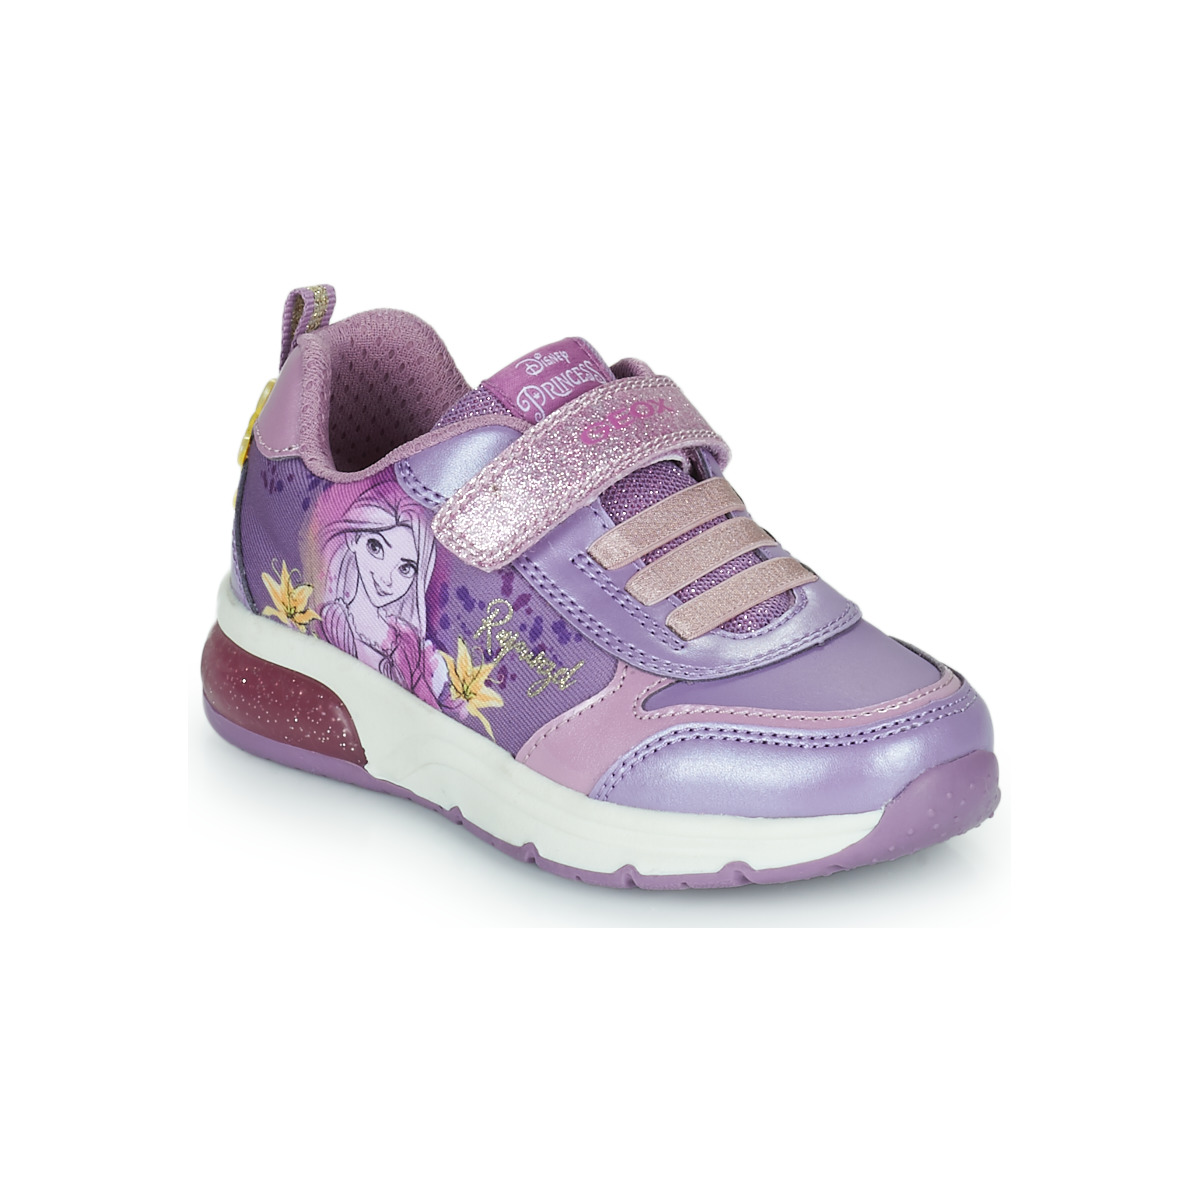 Παπούτσια Κορίτσι Χαμηλά Sneakers Geox J SPACECLUB GIRL E Violet